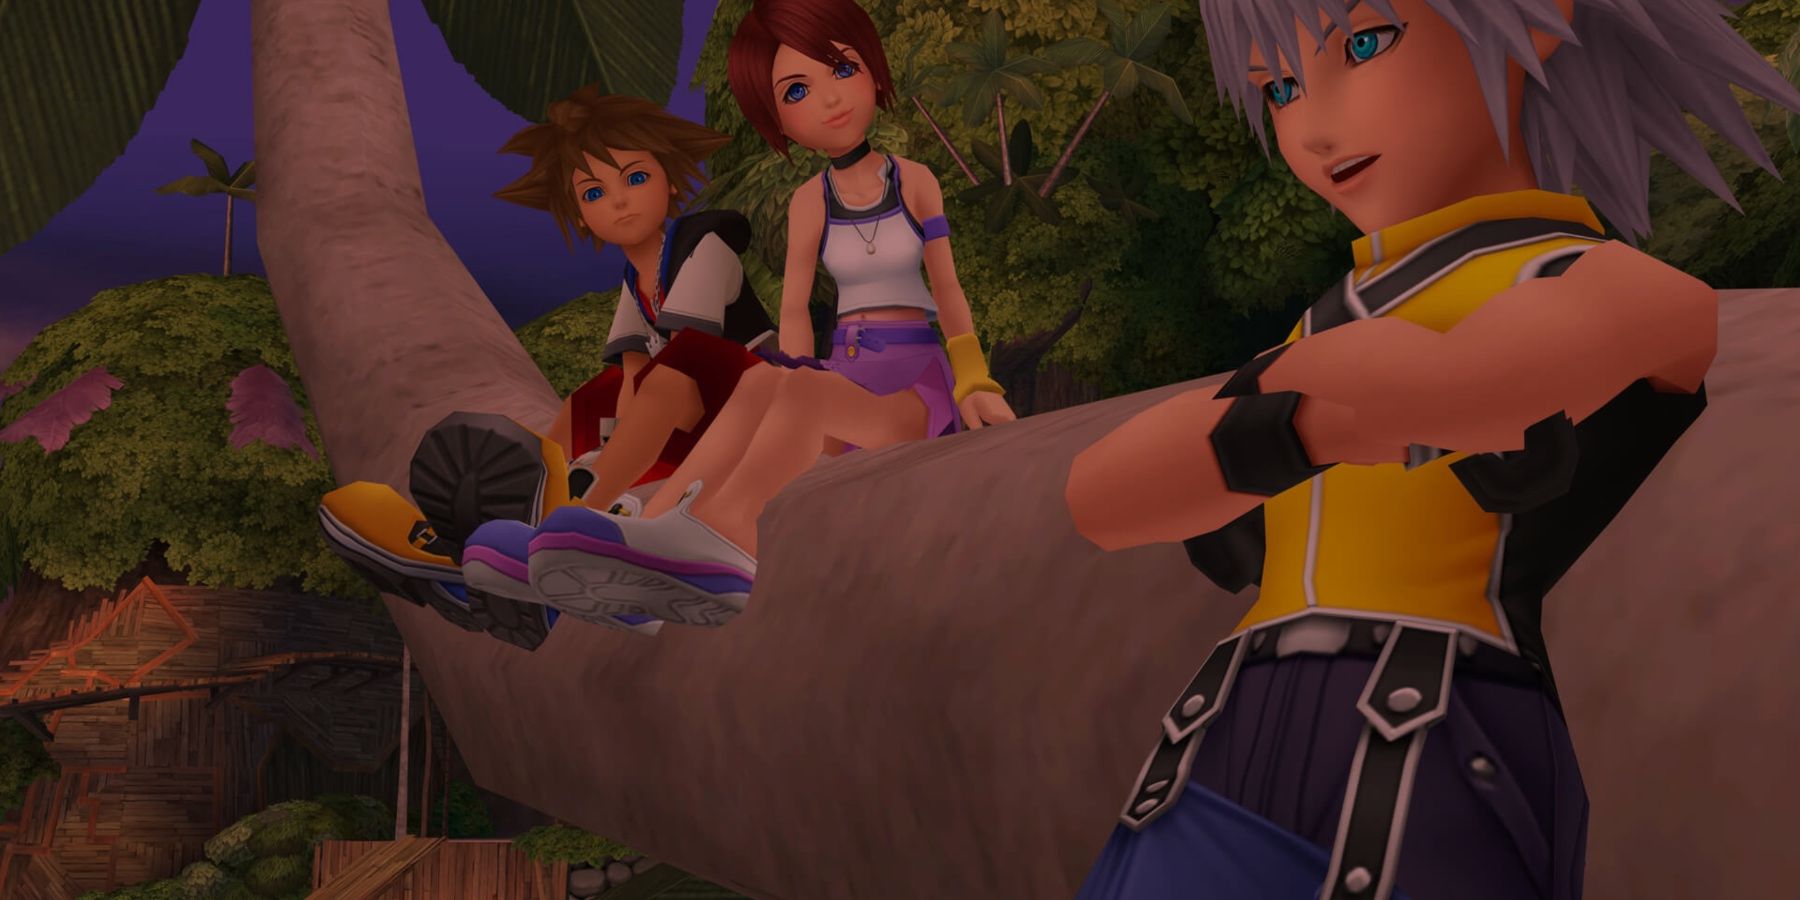 Personnages de Kingdom Hearts assis sur une branche